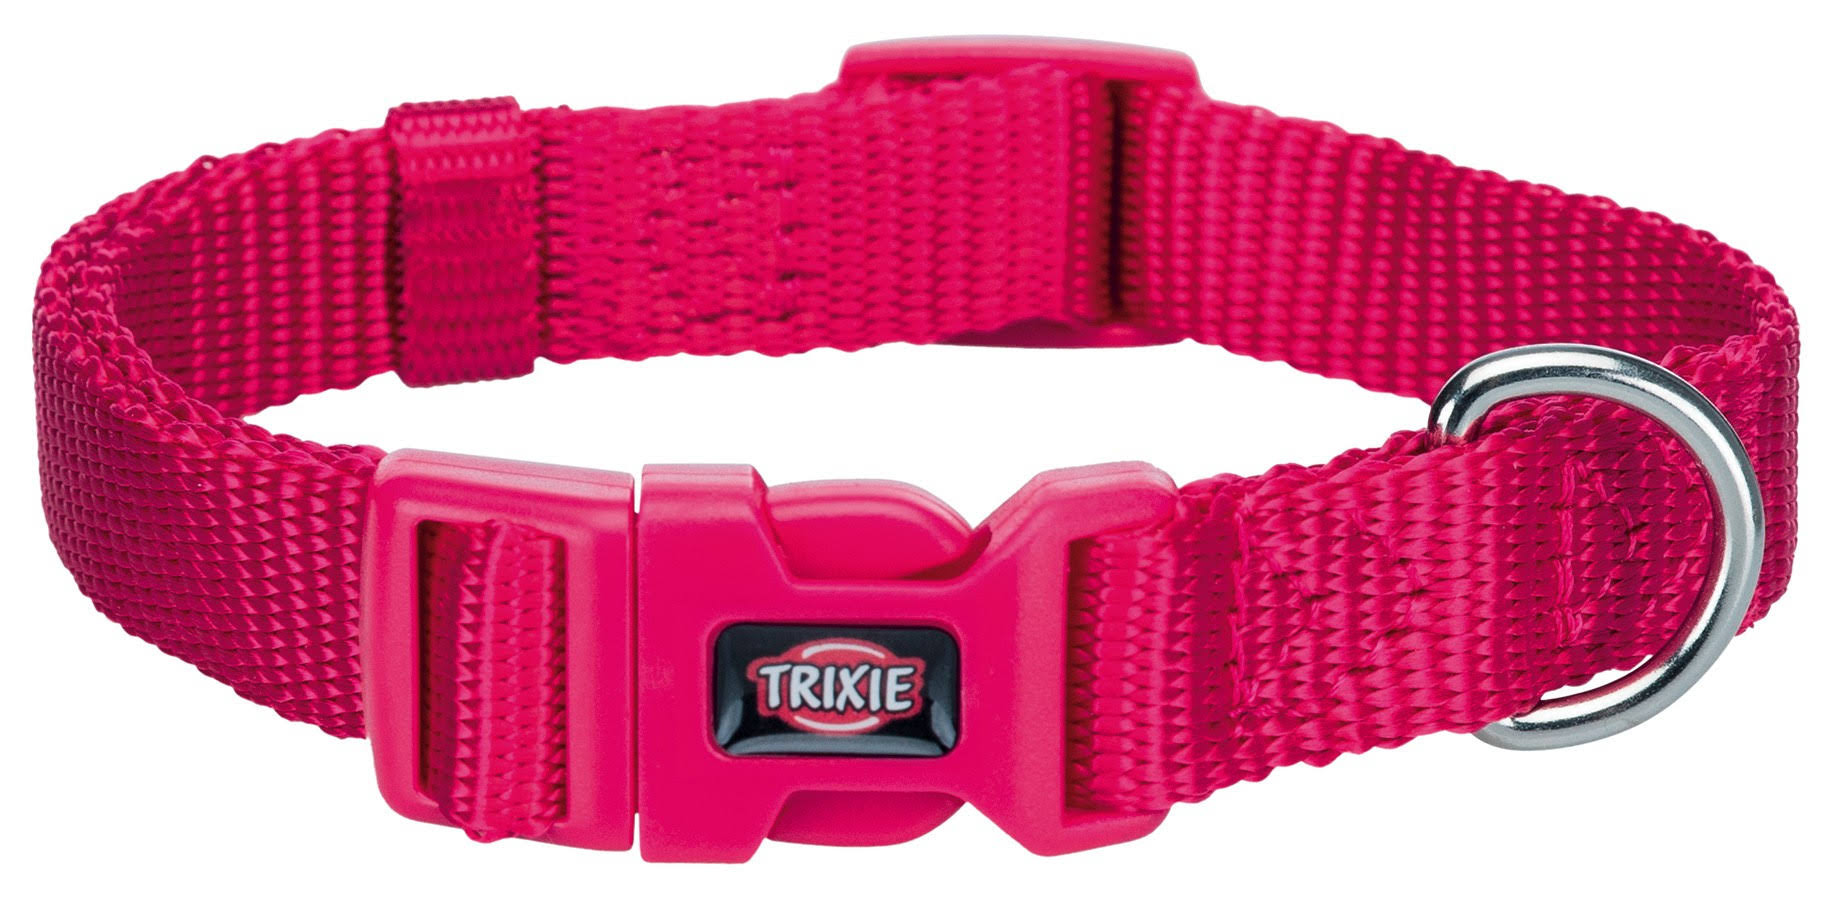 Trixie Collar Premium - Fuchsia